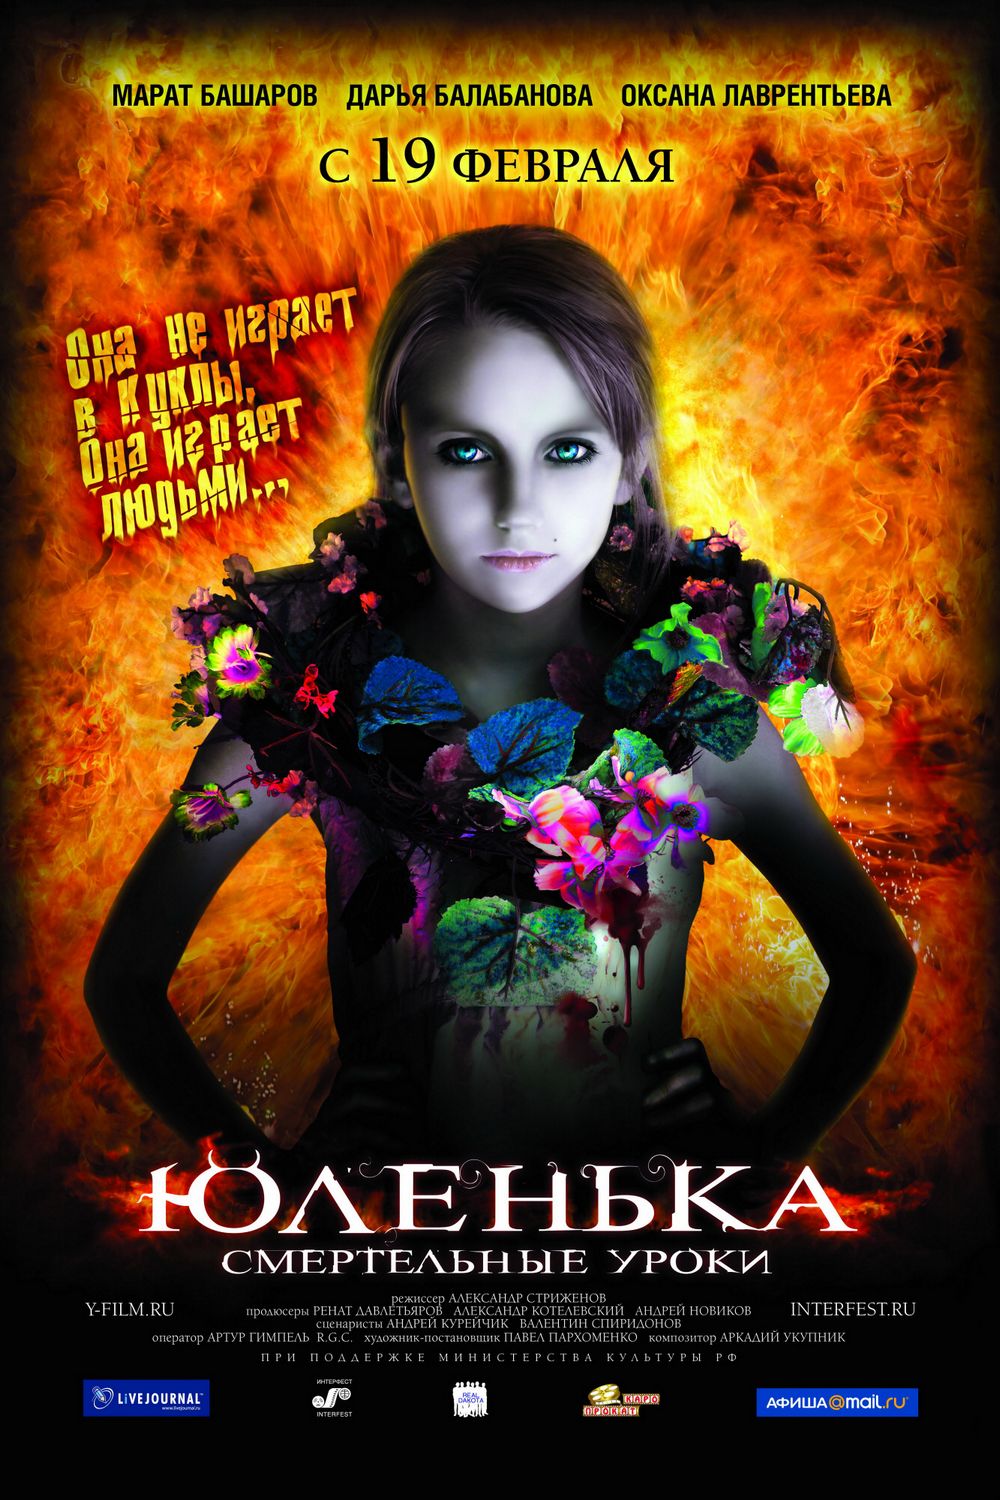 Extra Large Movie Poster Image for Yulenka (#2 of 2)